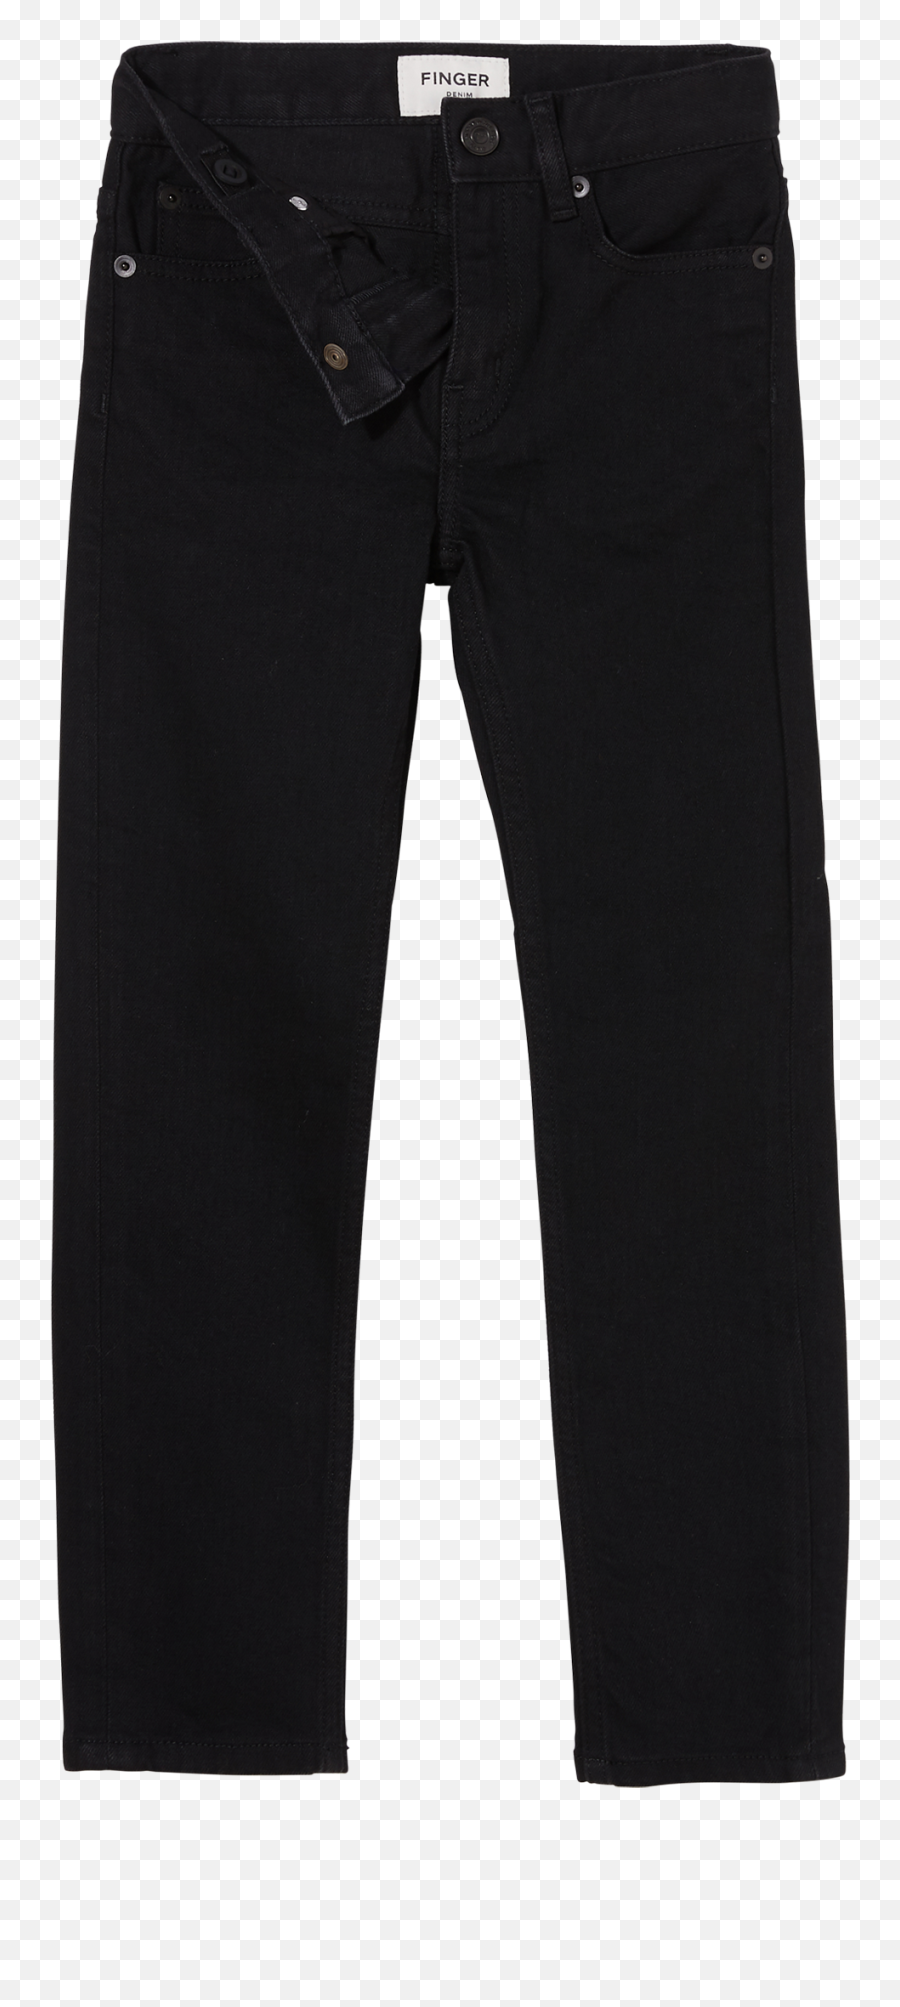 Black Jeans Png Transparent - Propper Uniform Pants,Ripped Jeans Png